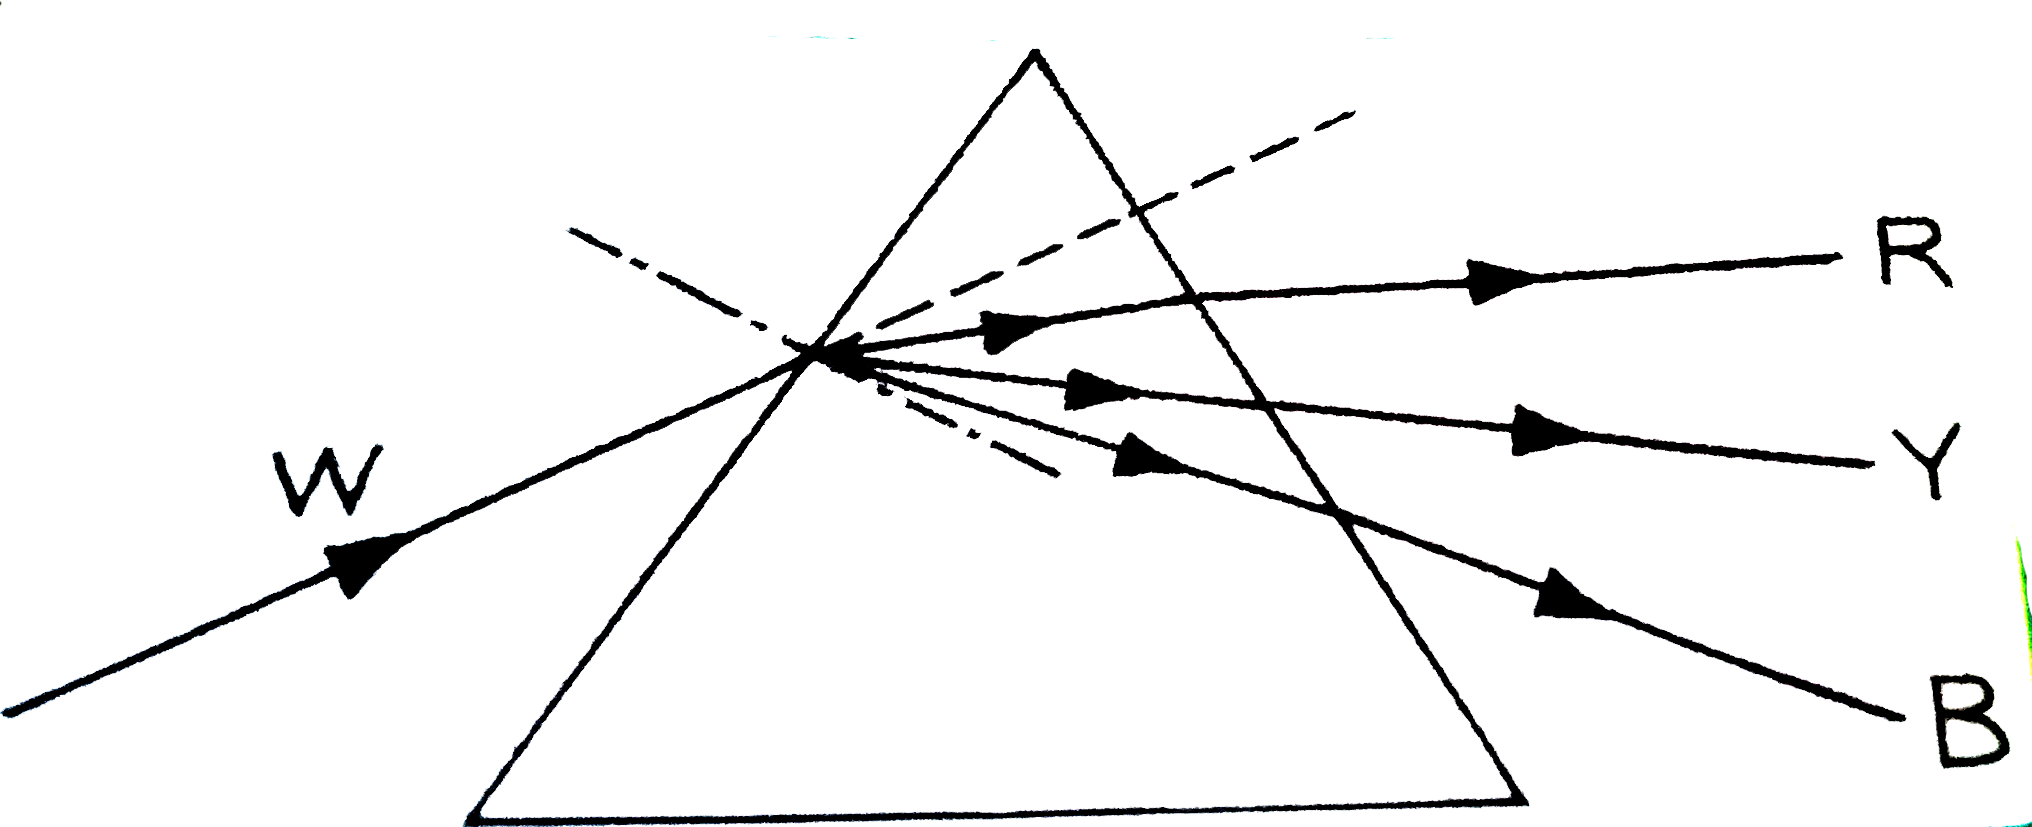 सलंगन किरण-आरेख में प्रिज्म द्वारा श्वेत प्रकाश-किरणे (W ) के वर्ण-विक्षेपण से उत्पन्न किरणों में तीन रंगो लाल (R ), पिले (Y ) तथा नीले  (B  ) की निर्गत किरणों को प्रदर्शित किया गया है। कारण सहित बताइए की किस निर्गत किरण को अशुद्ध खींचा गया है ?